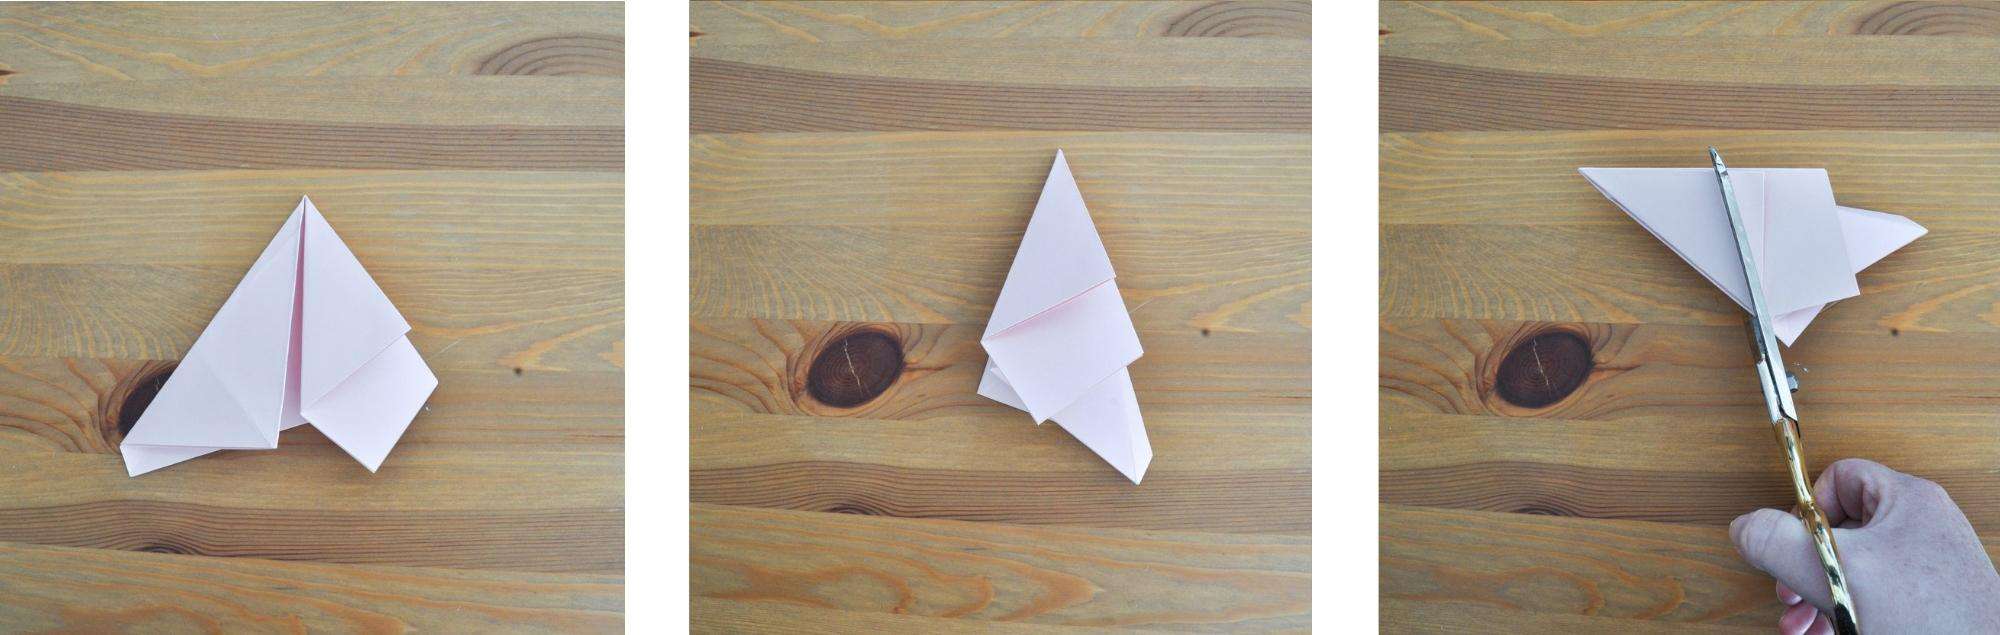 DIY paper star